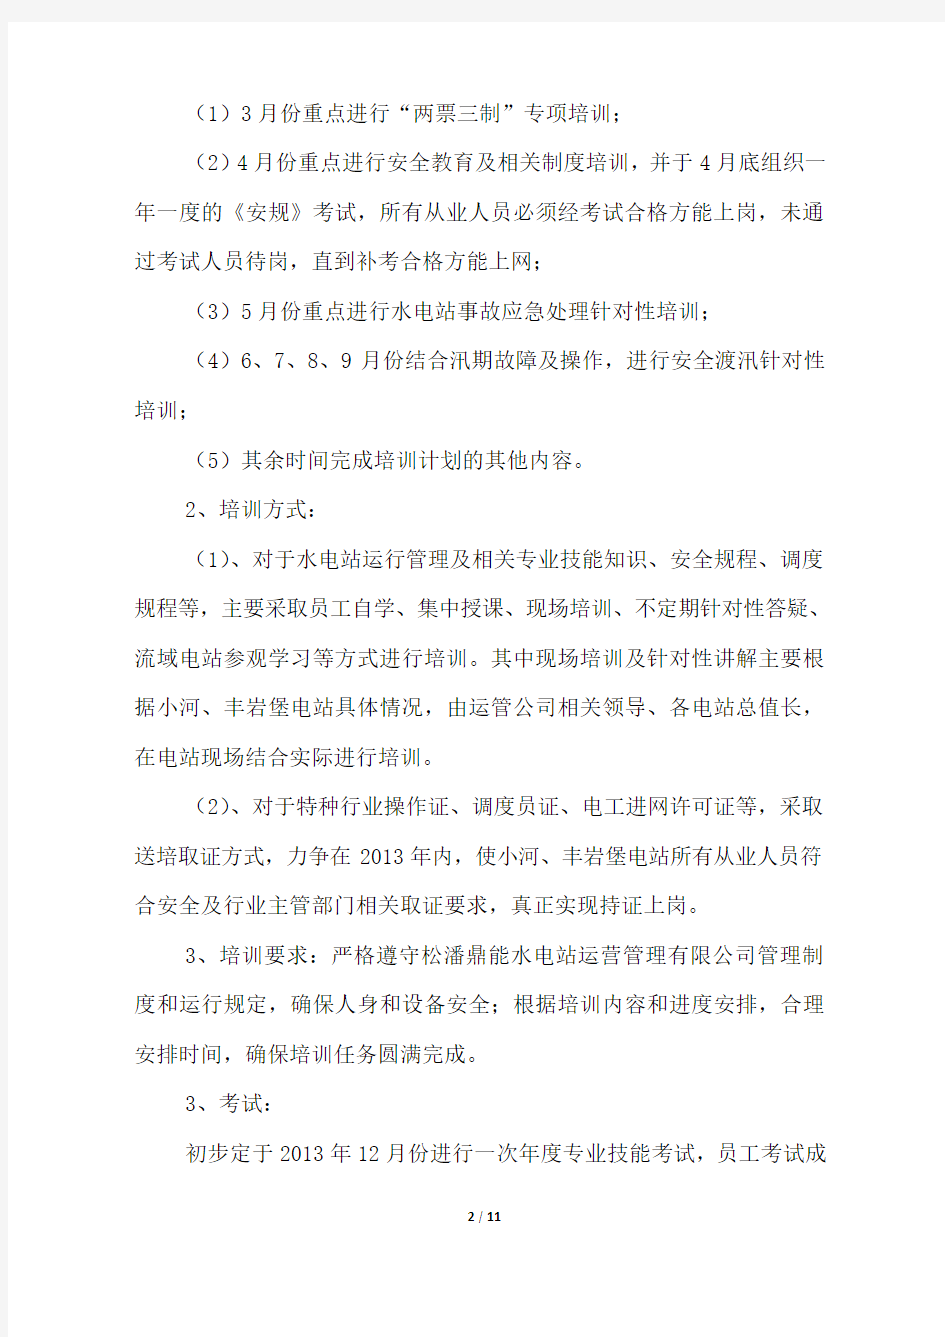 松潘鼎能水电站运营管理有限公司2013年员工培训计划